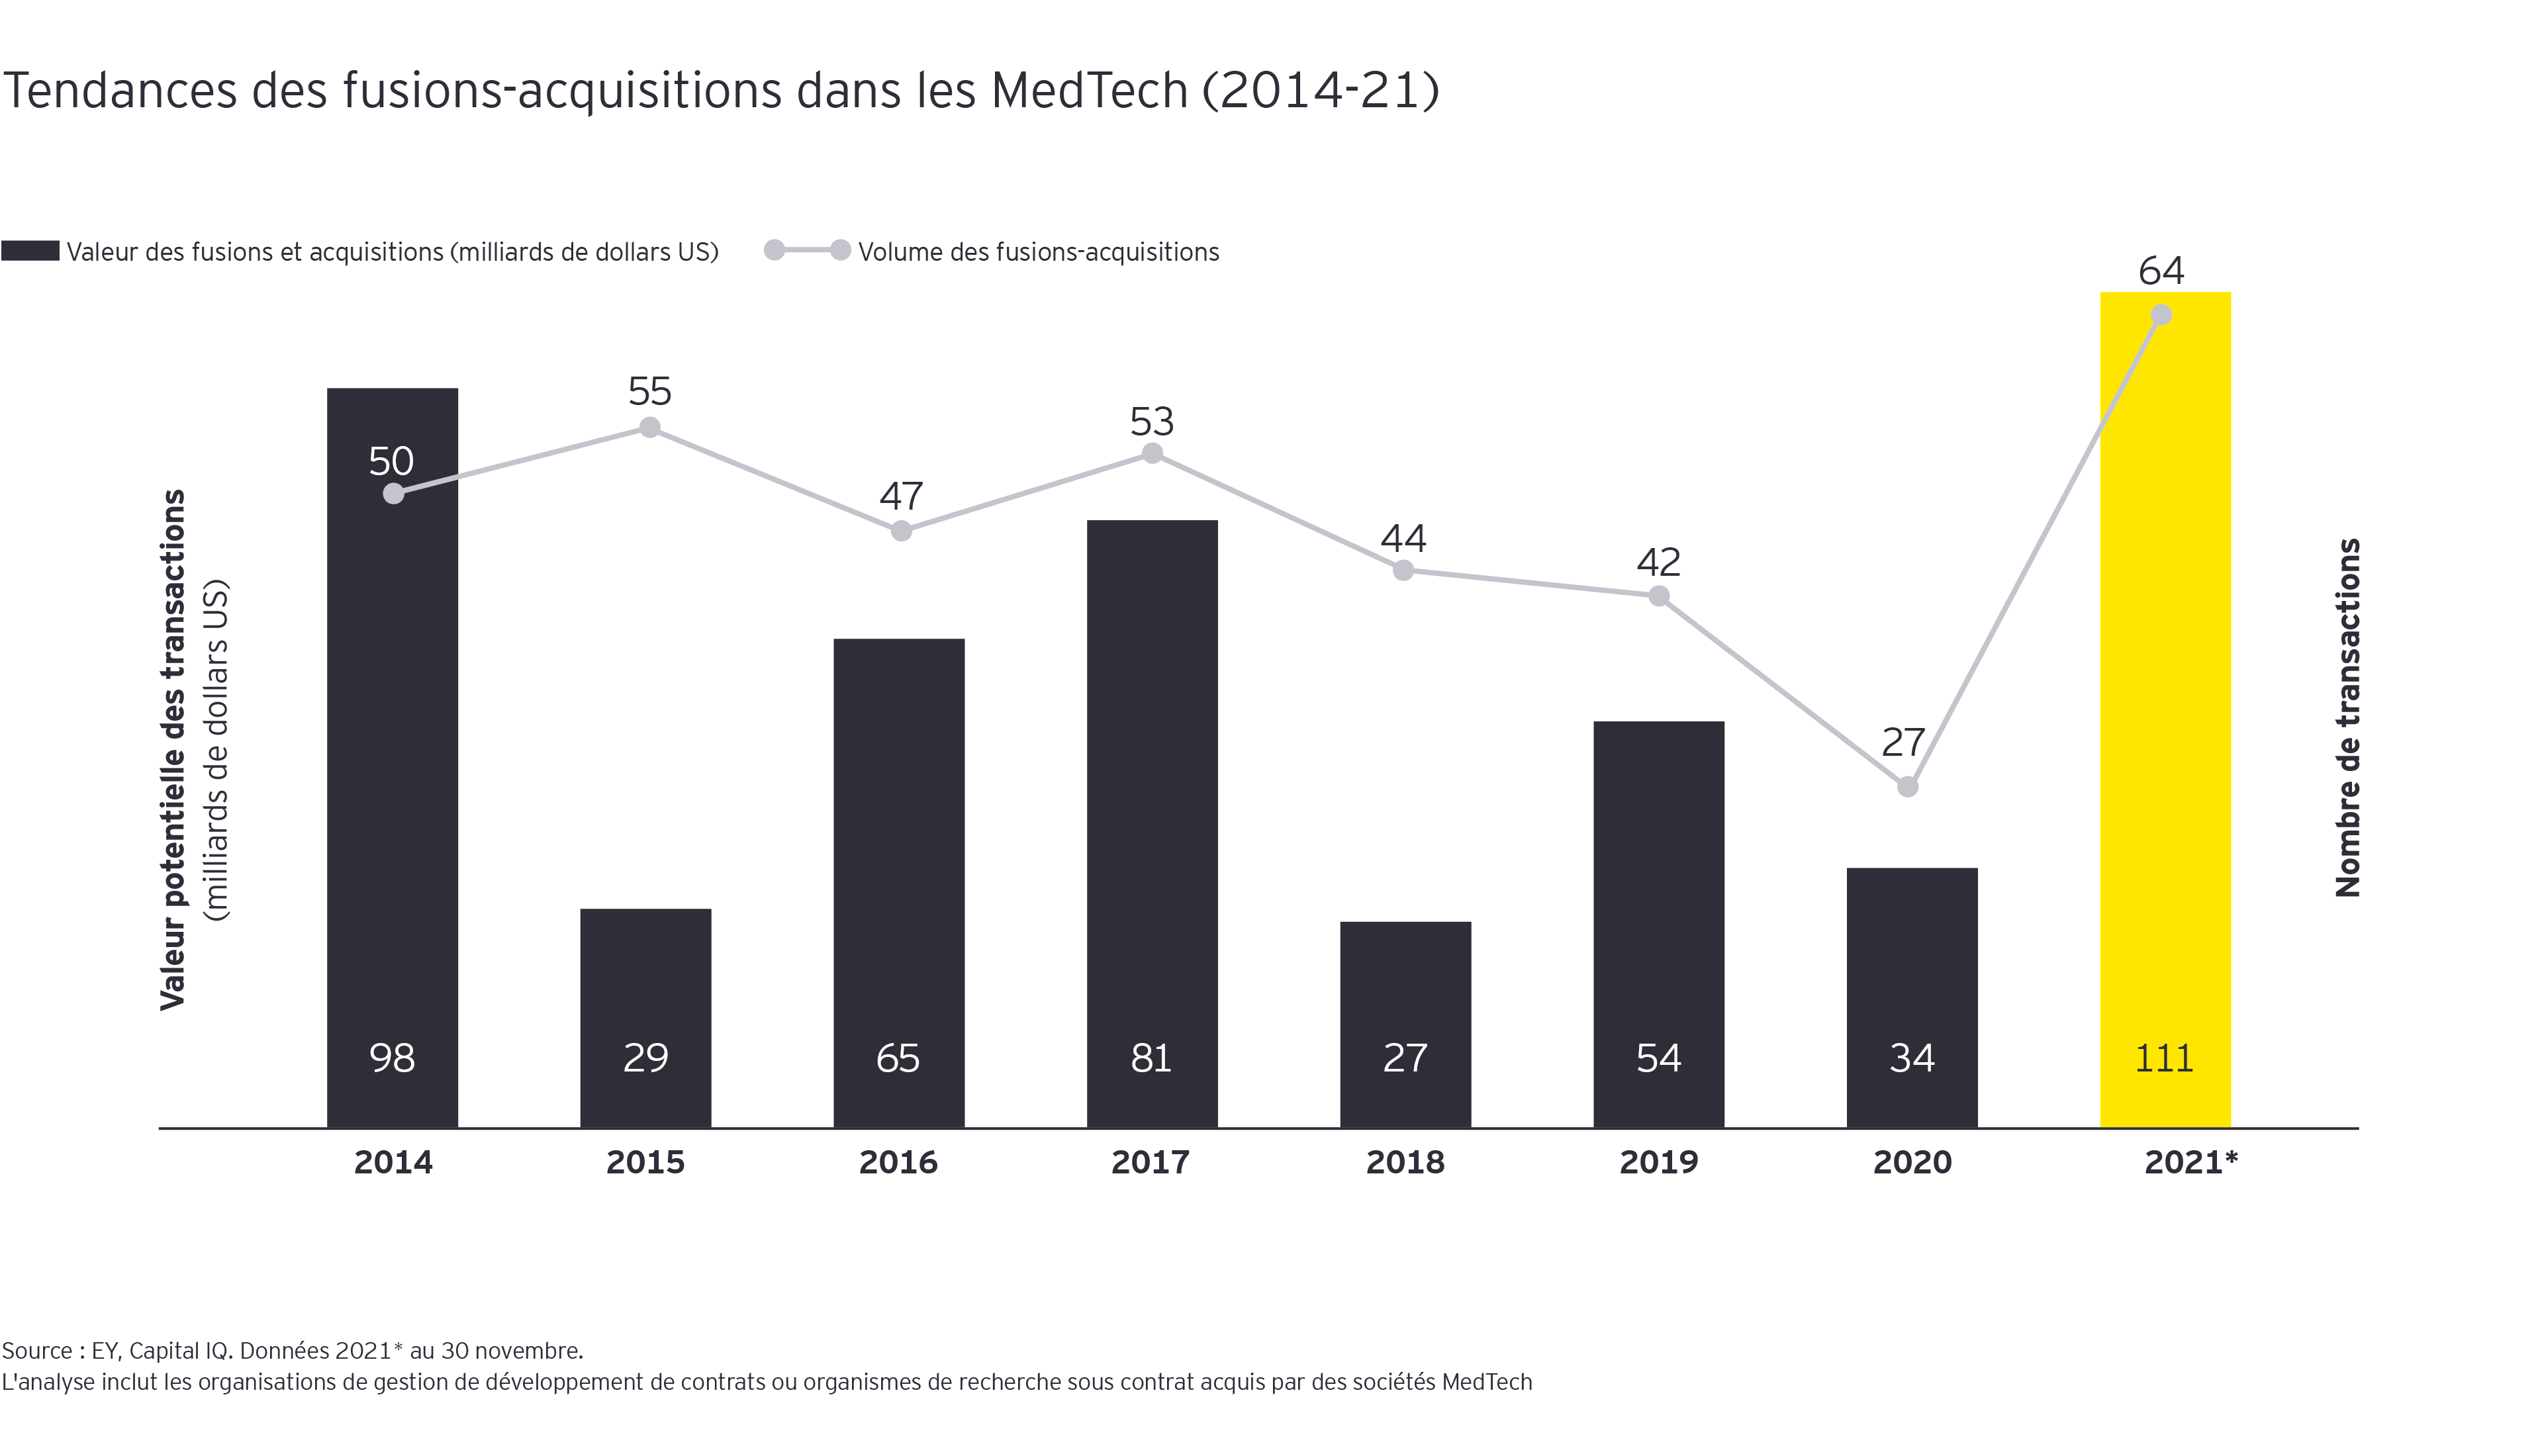 Tendances des fusions-acquisitions dans les MedTech (2014-21)